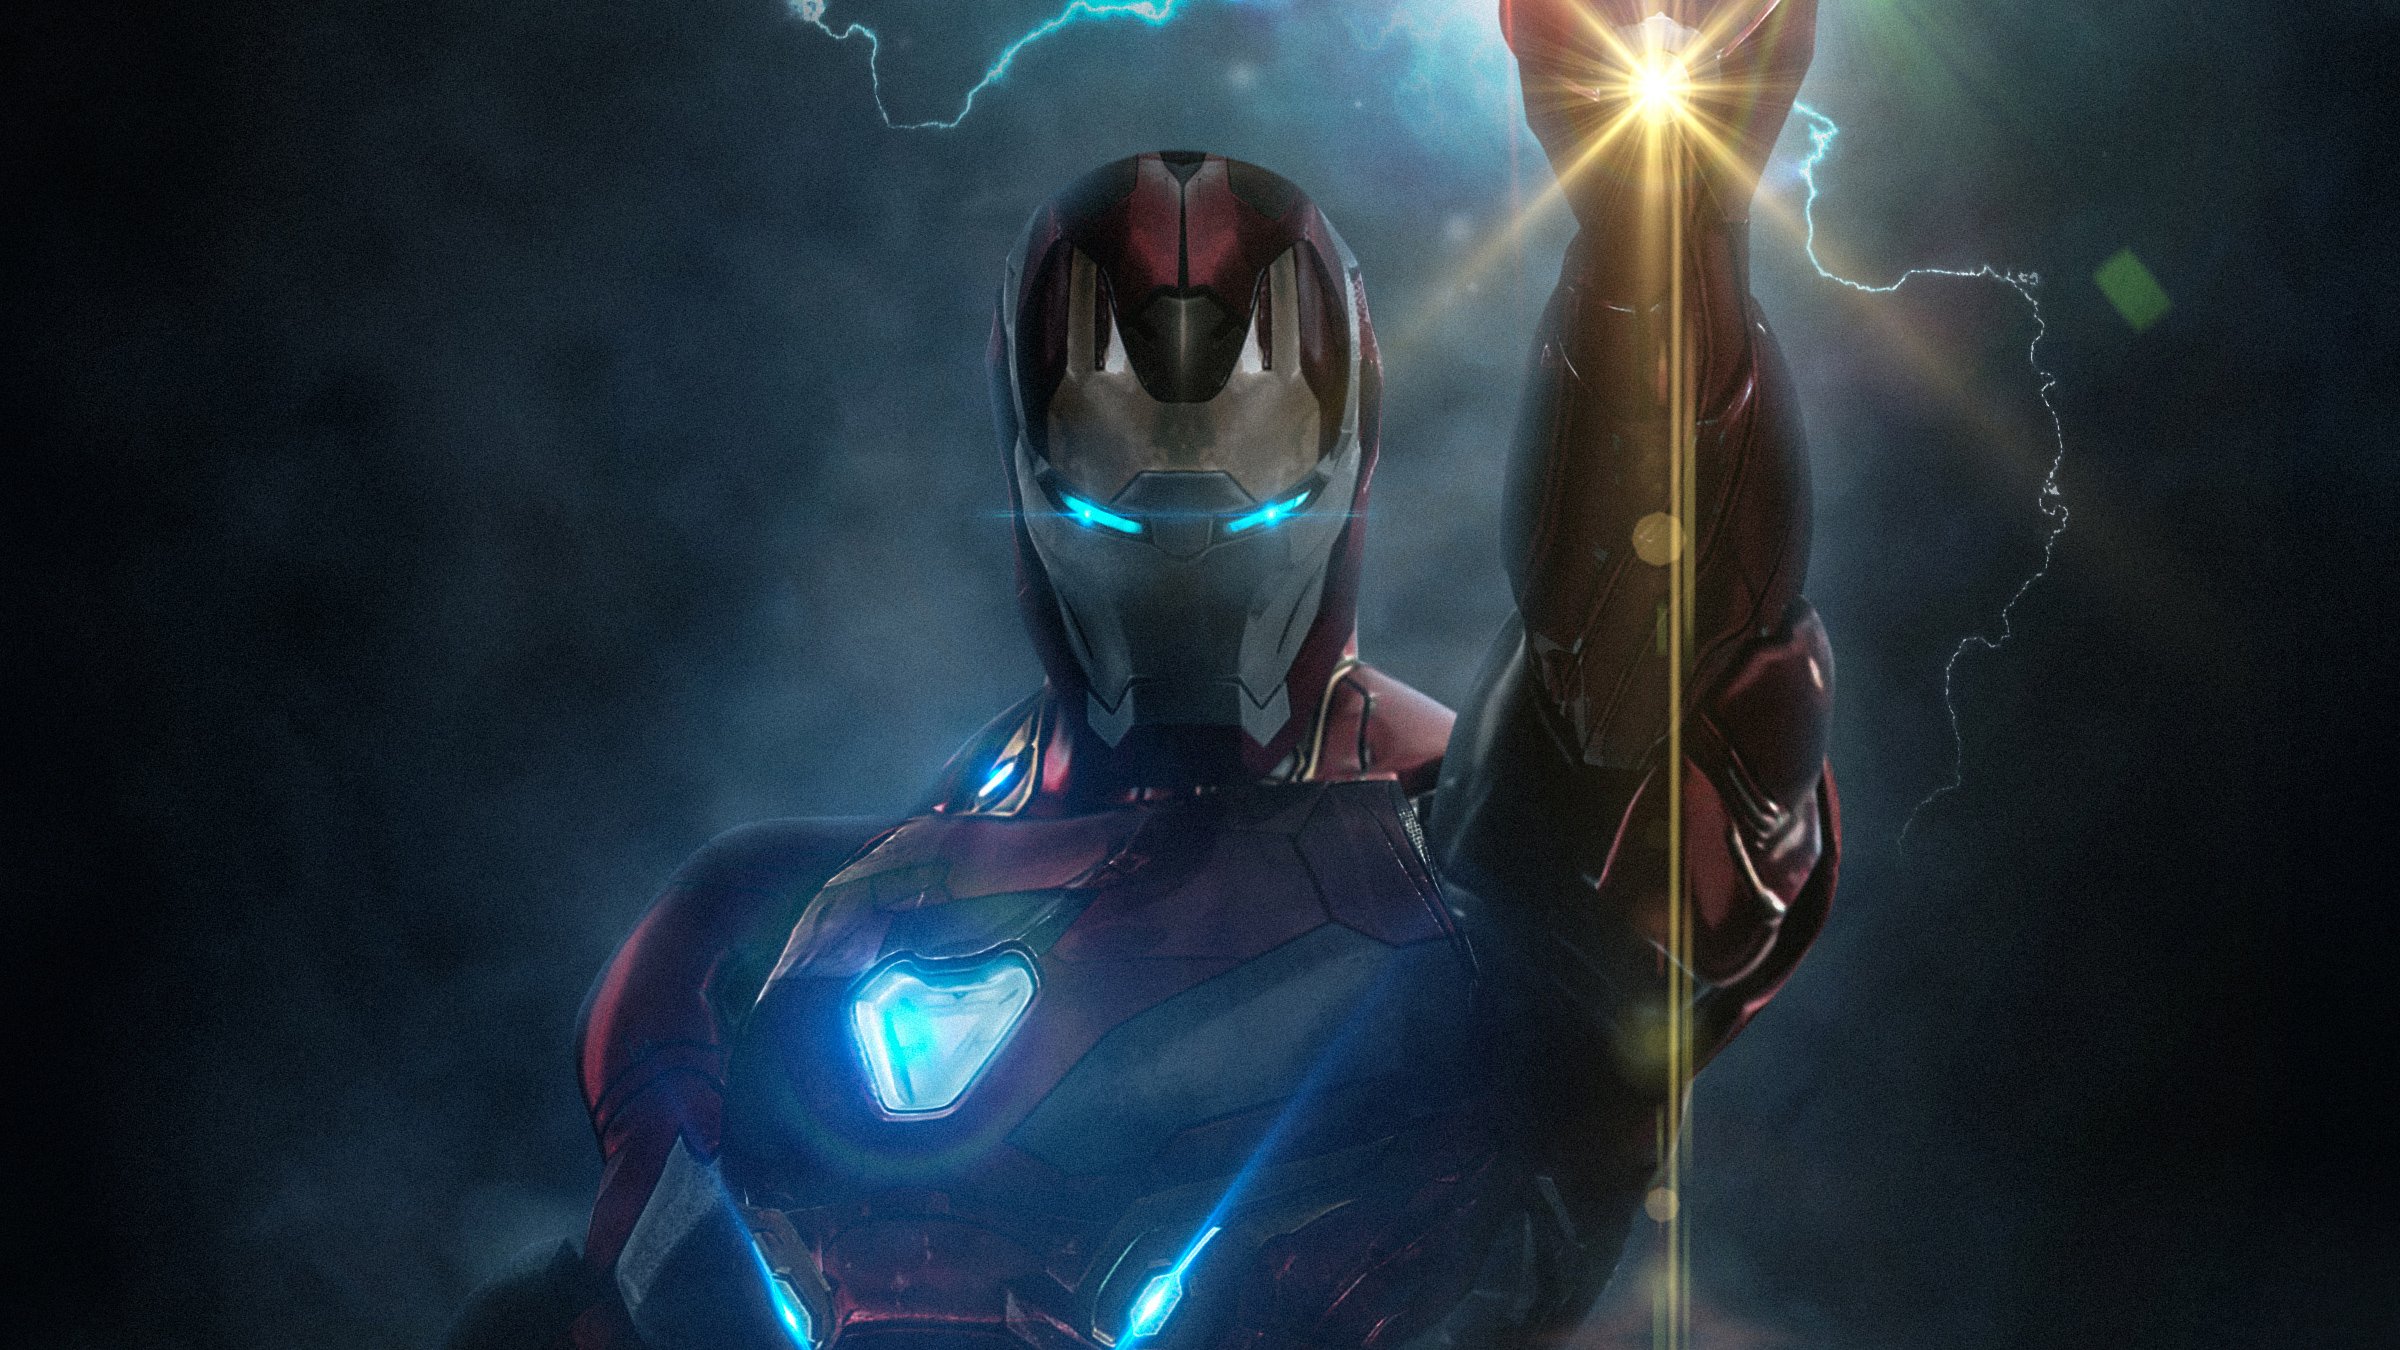 Hình nền Iron Man 4K Endgame sẽ khiến bạn trở nên không thể cưỡng lại. Với chất lượng hình ảnh tuyệt vời, bạn sẽ cảm thấy mình đang được đưa vào thế giới của siêu anh hùng and trước sự chống lại của thế giới. Tải về hình nền Iron Man 4K Endgame ngay để có trải nghiệm tuyệt vời nhất.